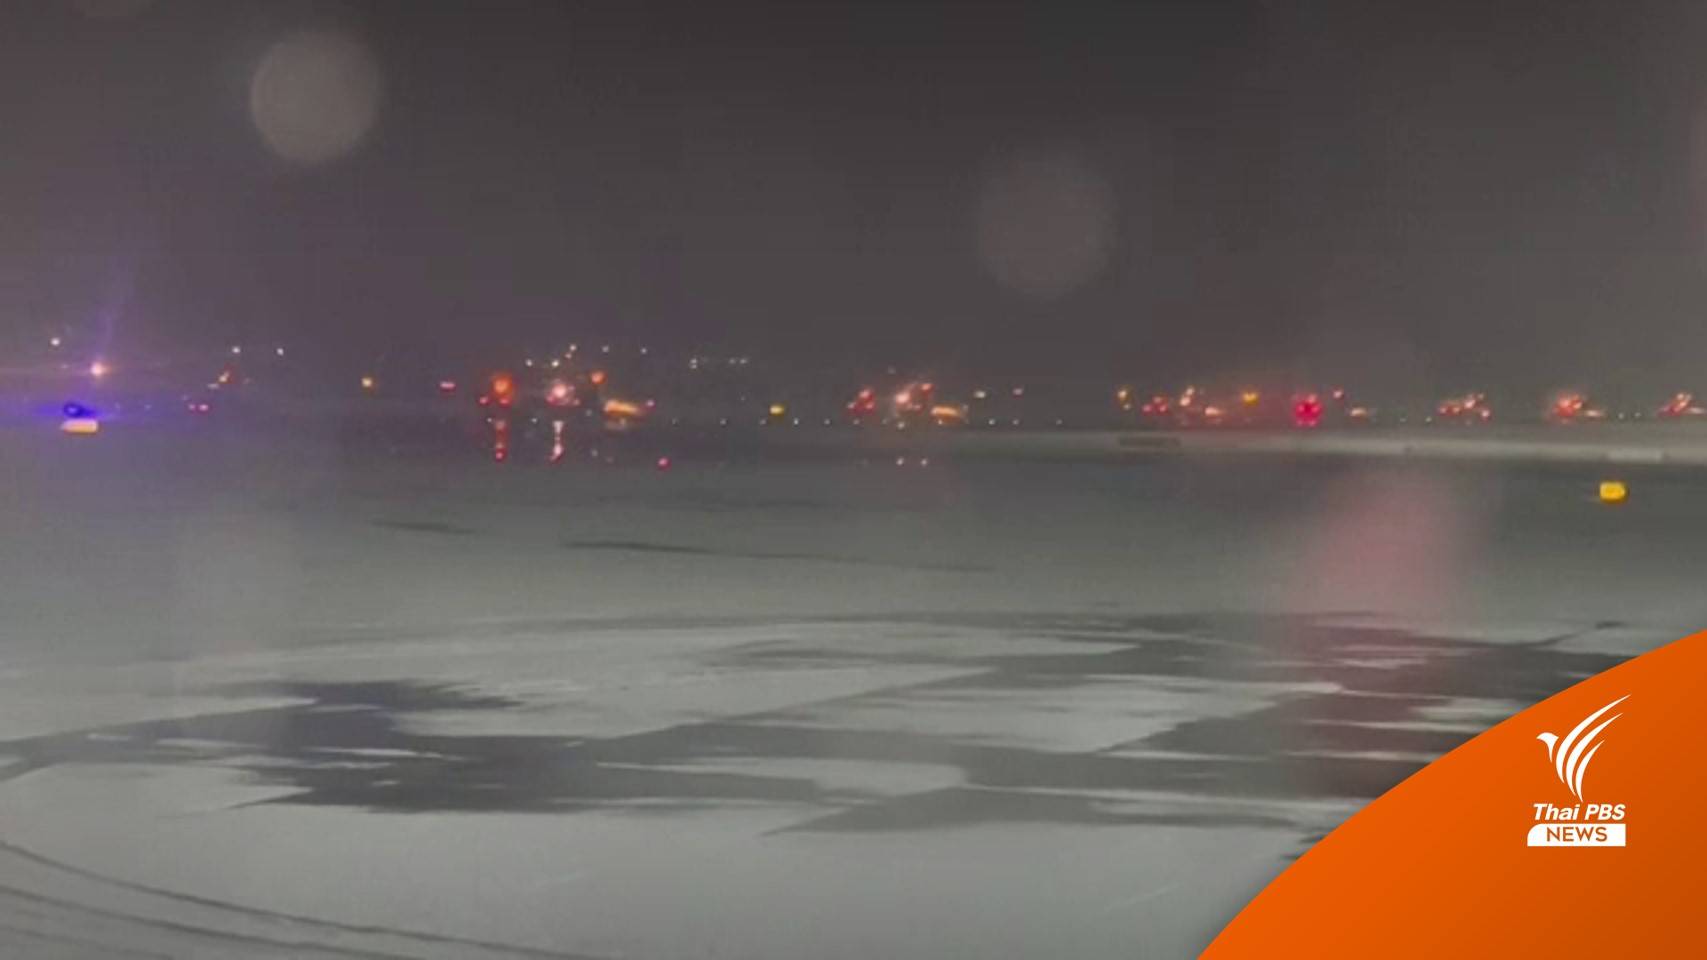 ปิดชั่วคราว "สนามบินแกตวิค-สแตนสเตด" หลังหิมะตกหนัก